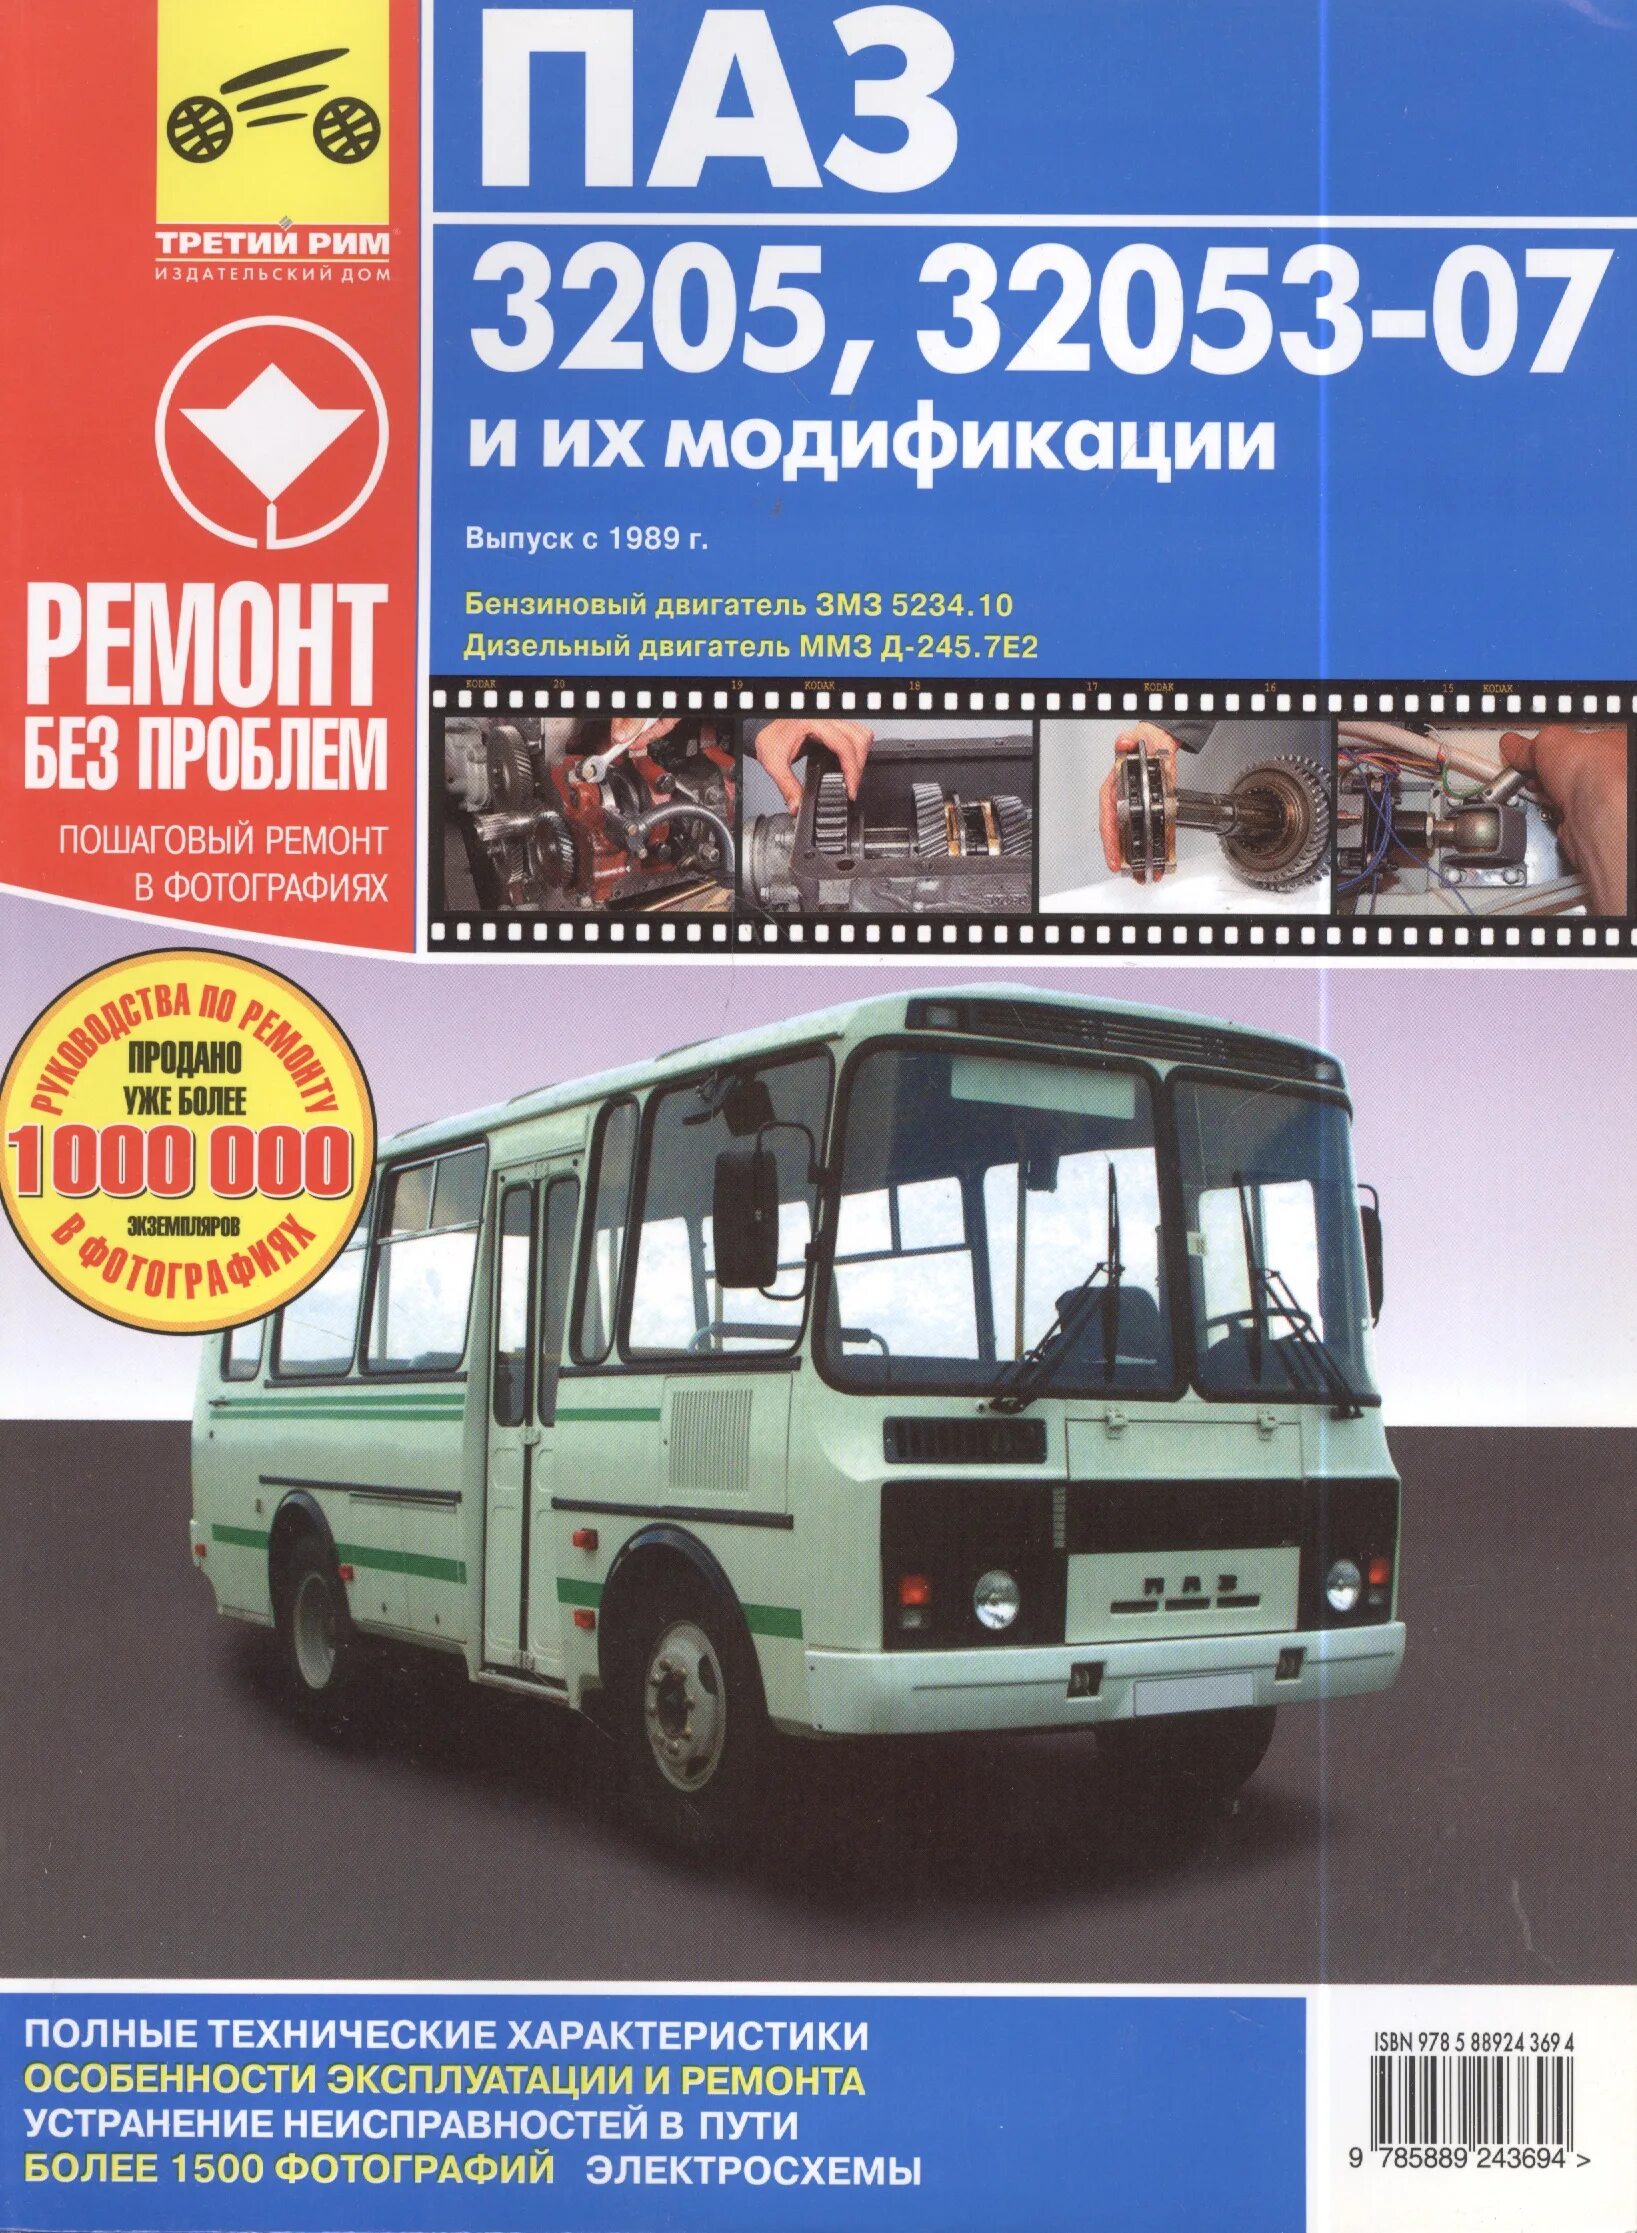 Паз 3205 характеристики. ПАЗ 3205 1989. ПАЗ-3205 автобус. ПАЗ 3205 руководство. Книга по ремонту ПАЗ 32053.